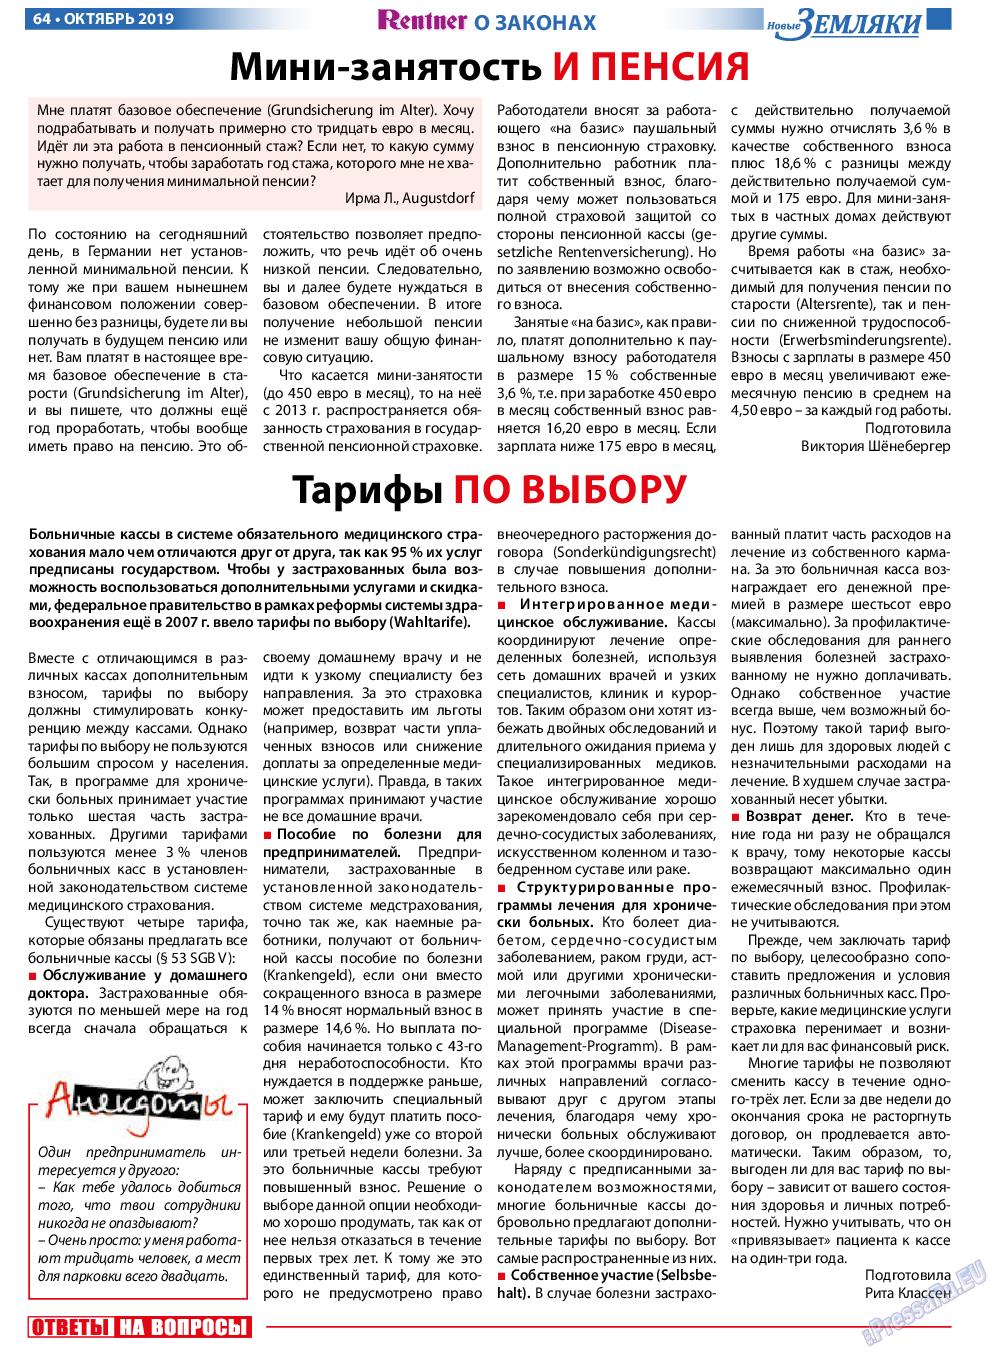 Новые Земляки, газета. 2019 №10 стр.64